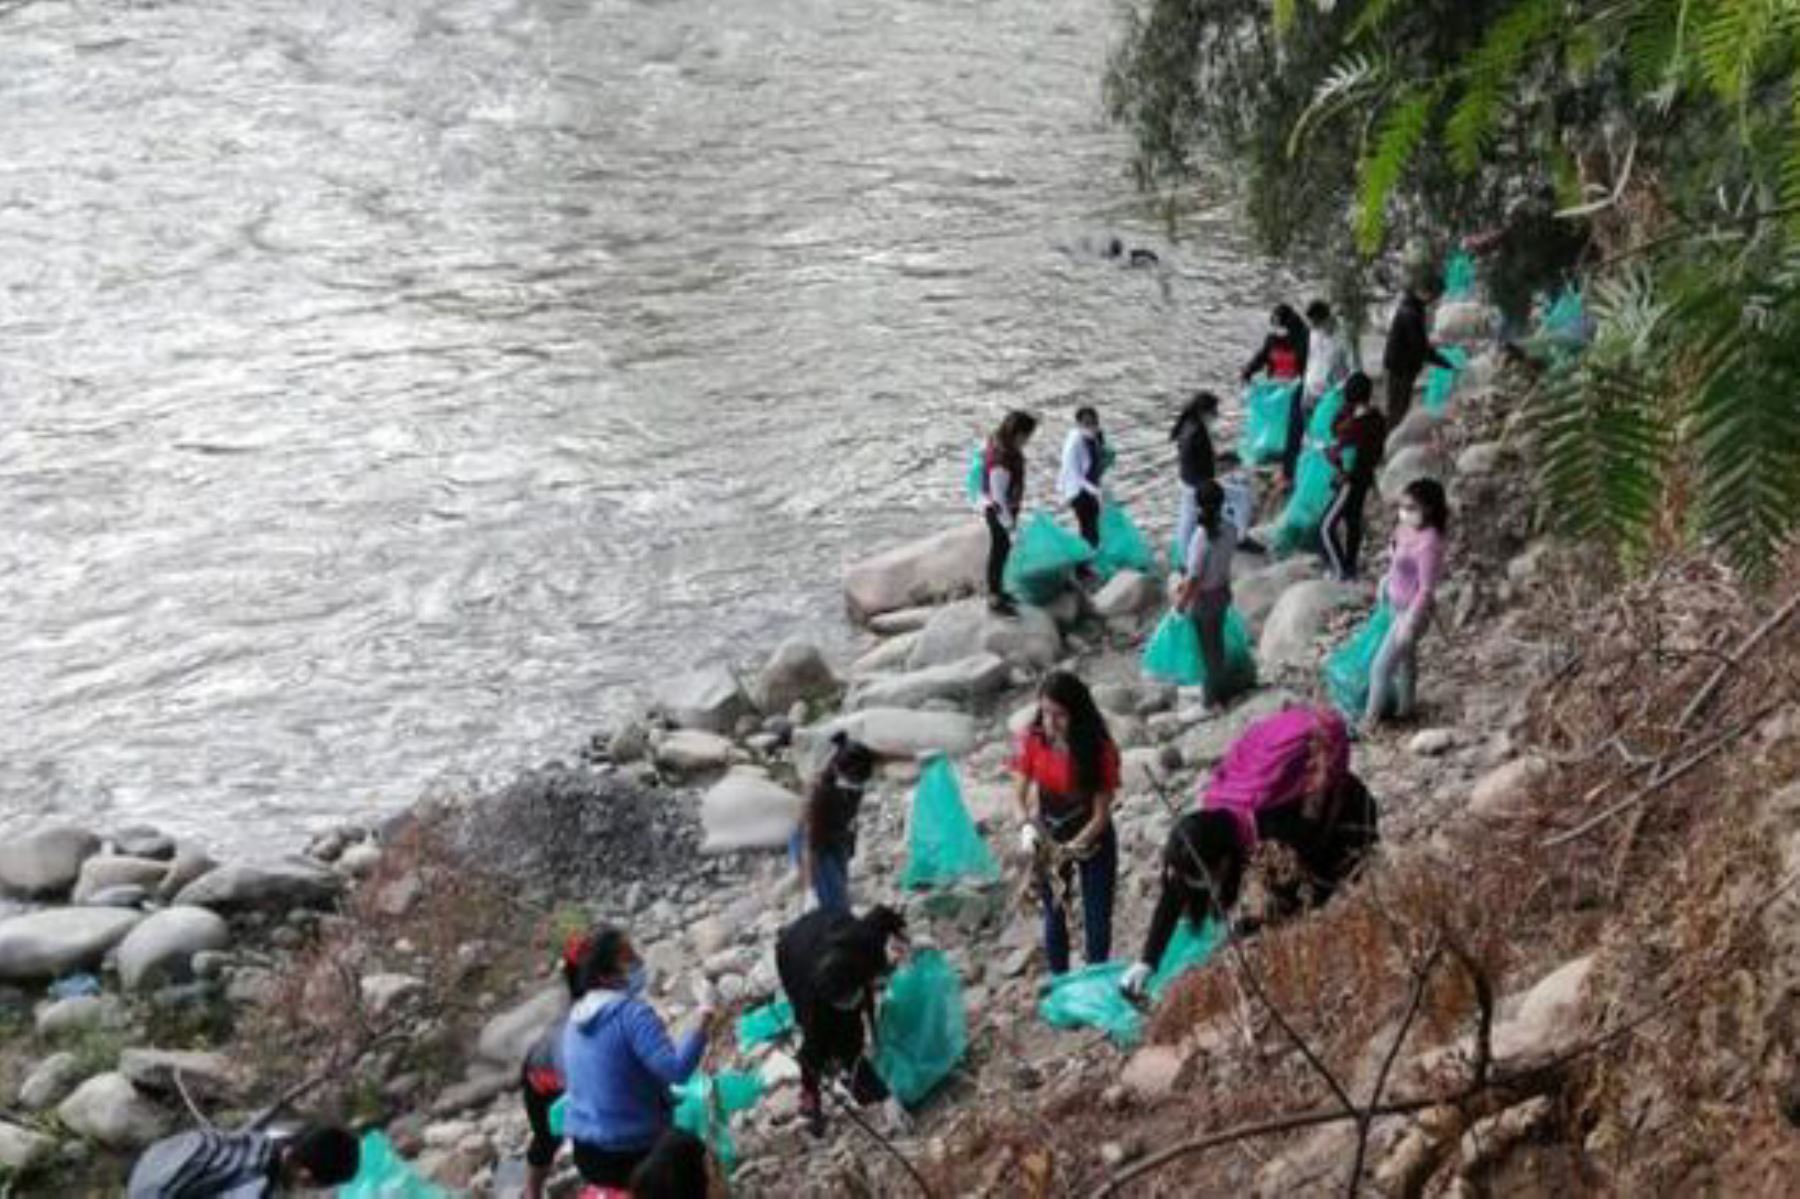 La Municipalidad Provincial de Huánuco organizó jornada de limpieza en el río Huallaga, de donde recolectaron más de tres toneladas de residuos sólidos.